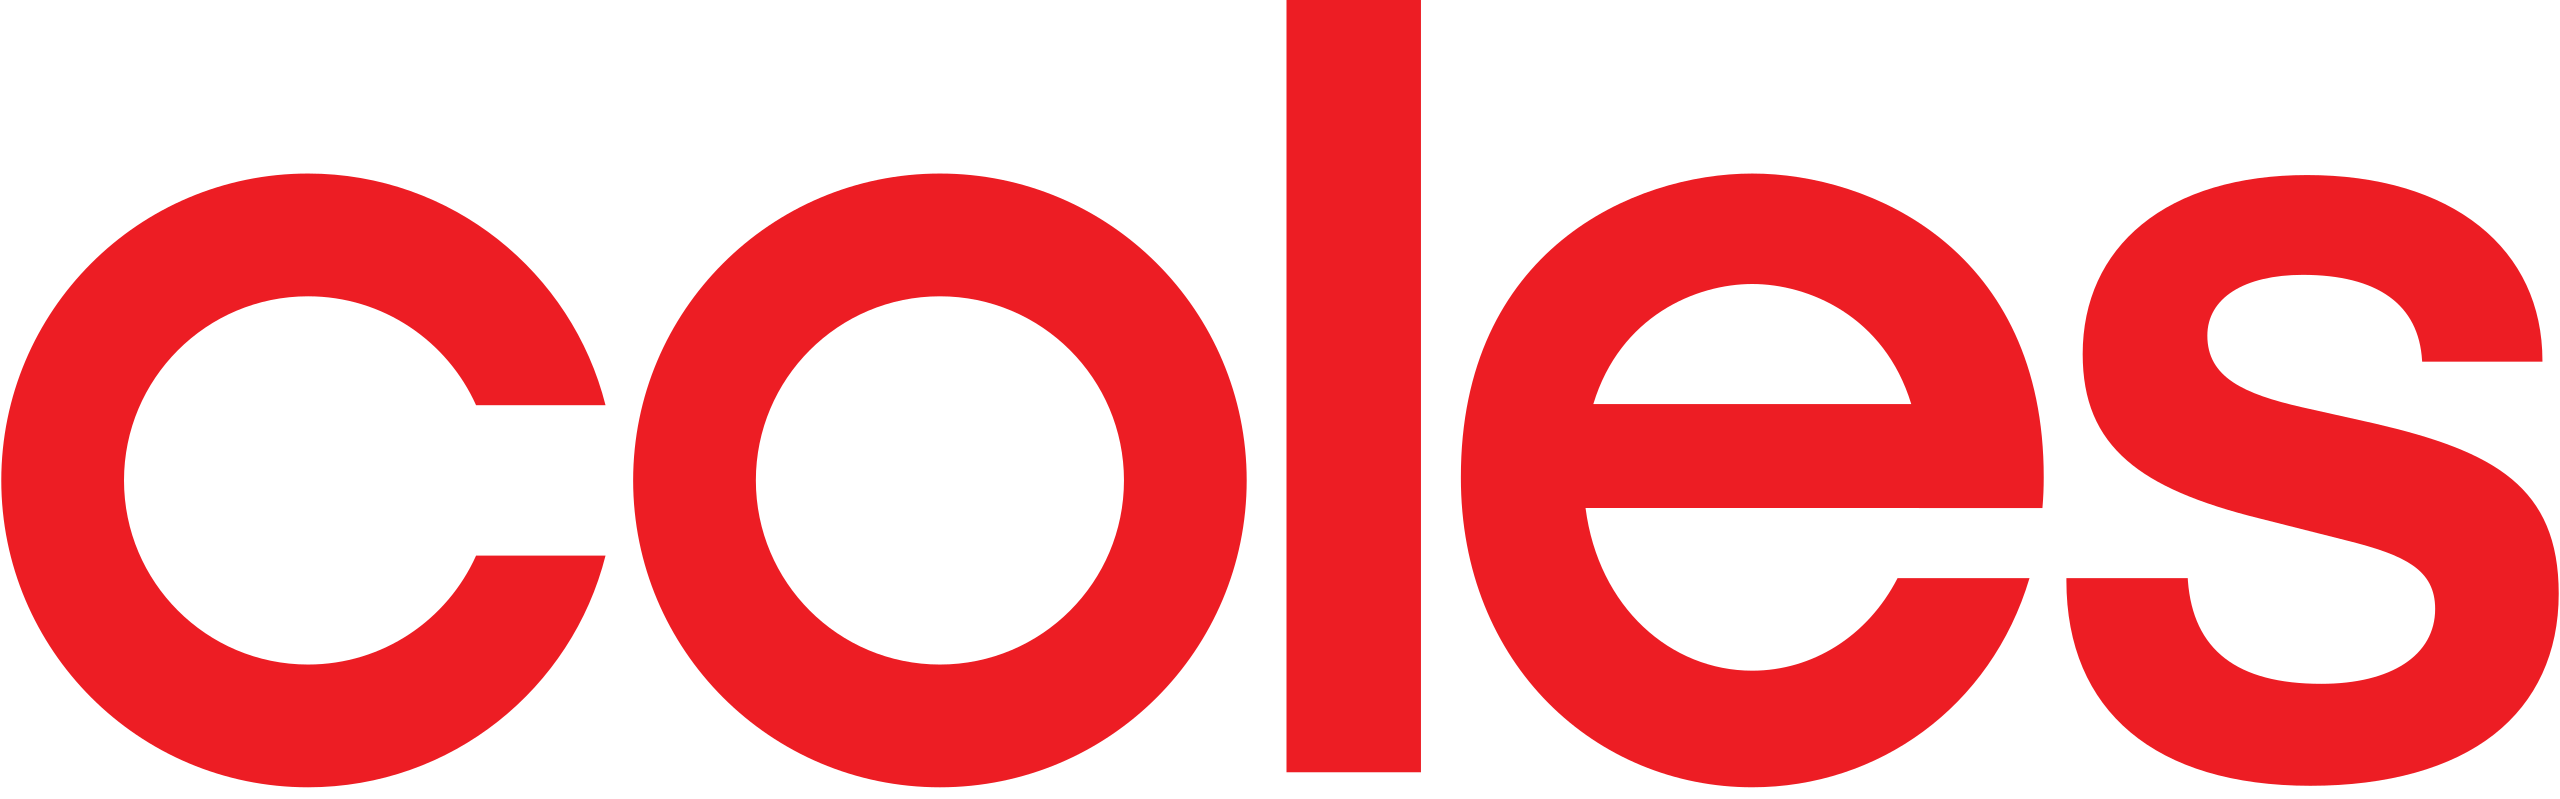 Coles logo.svg Home New